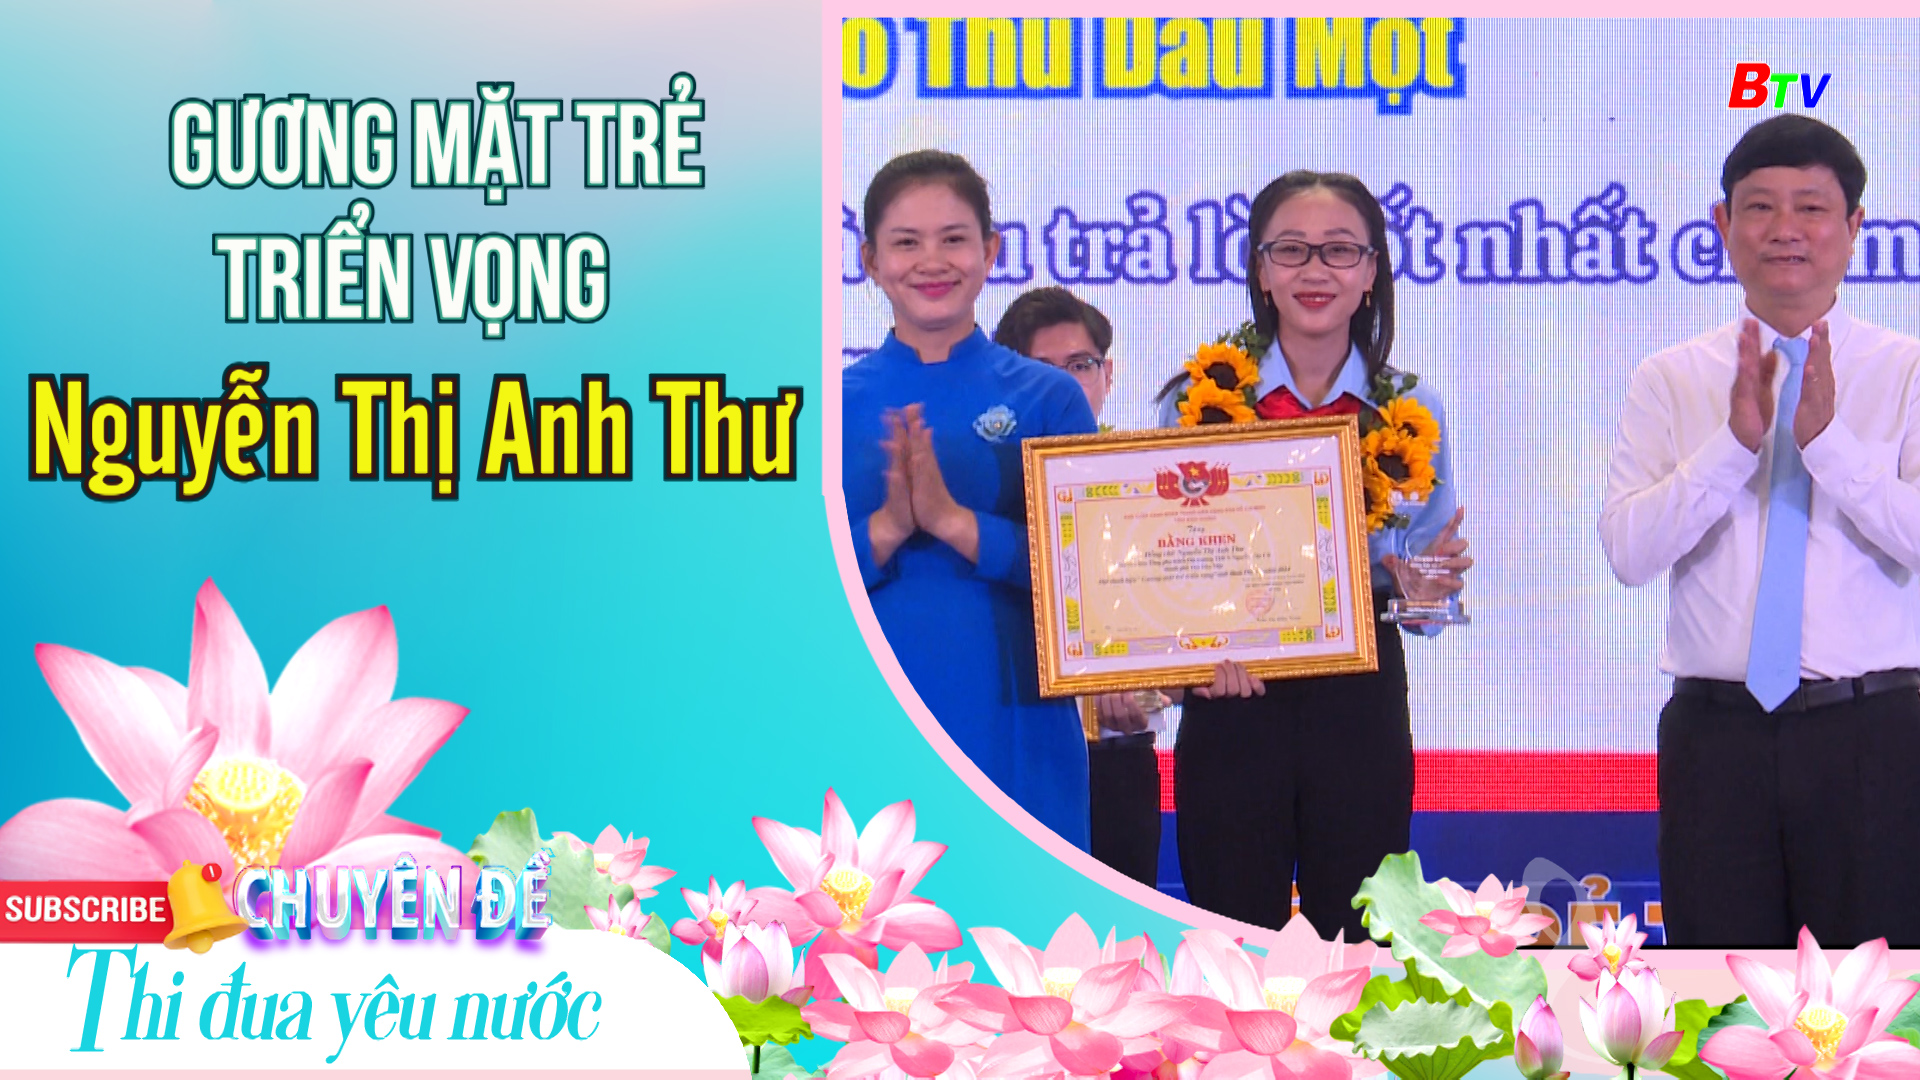 Gương mặt trẻ triển vọng Nguyễn Thị Anh Thư